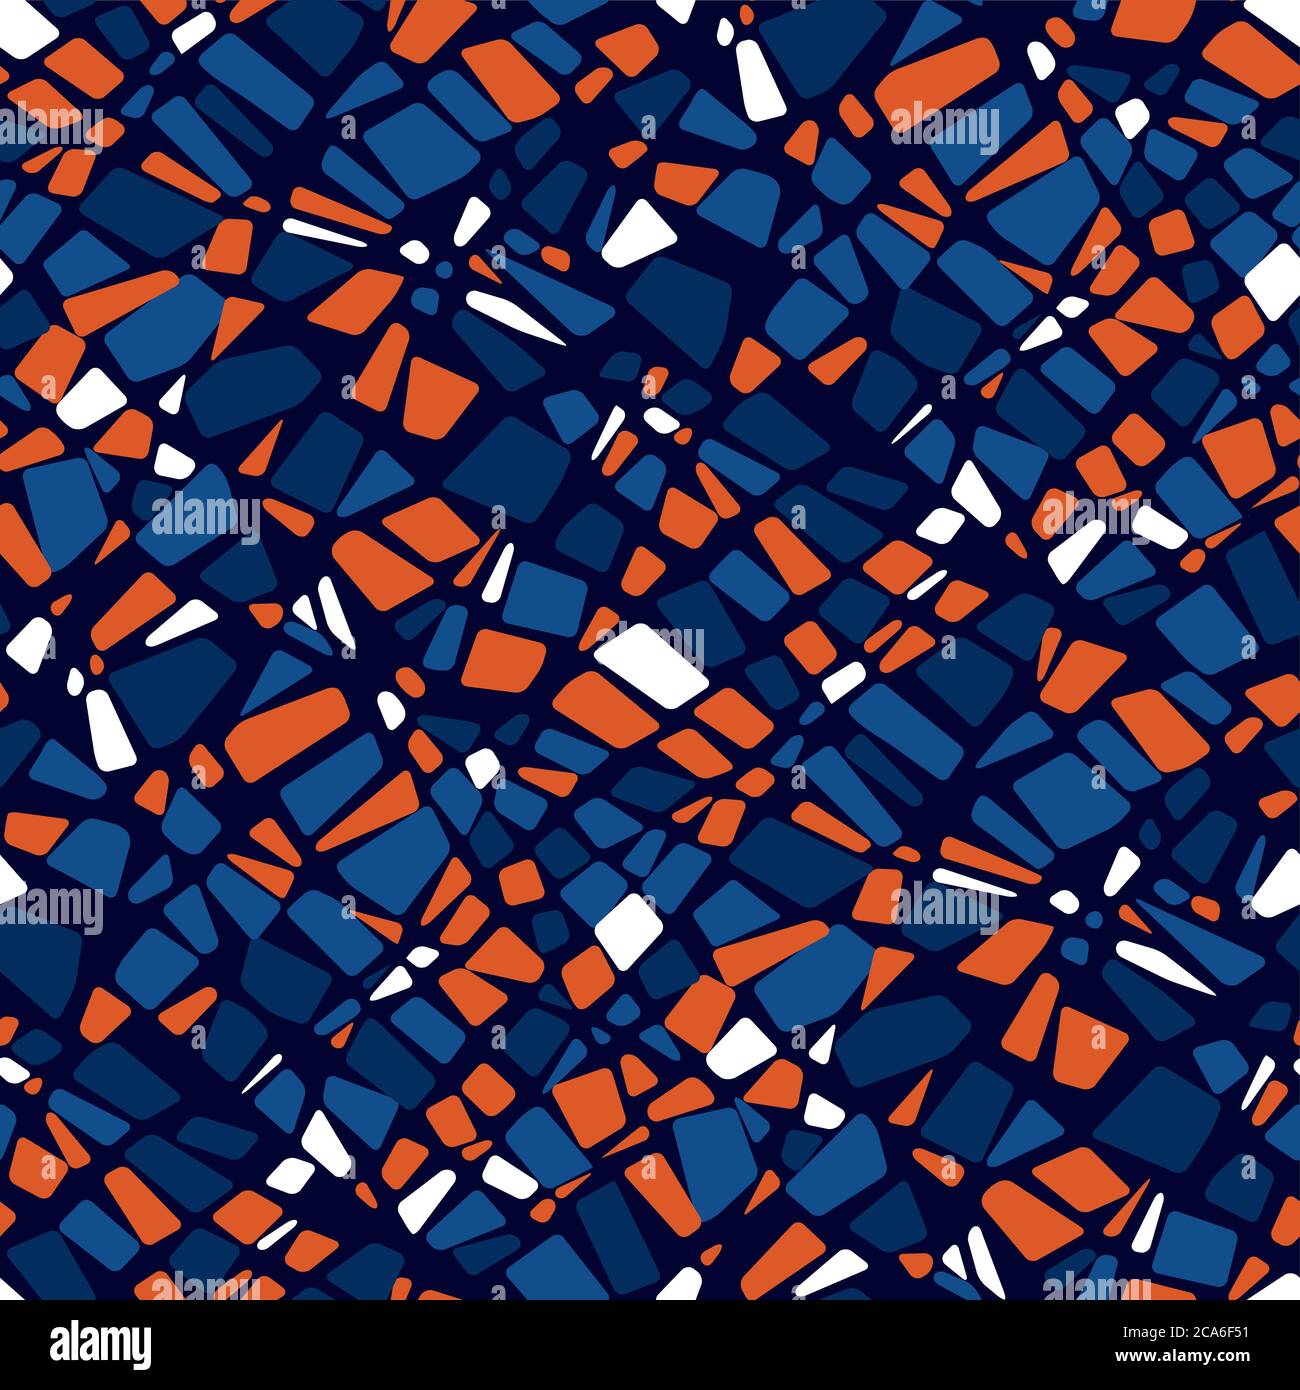 Dynamic Sport Style Orange und Nacht blau Farbe nahtlose Muster für Hintergrund, Stoff, Textil, Wrap, Oberfläche, Web-und Print-Design. Abstrakter Rundum Stock Vektor